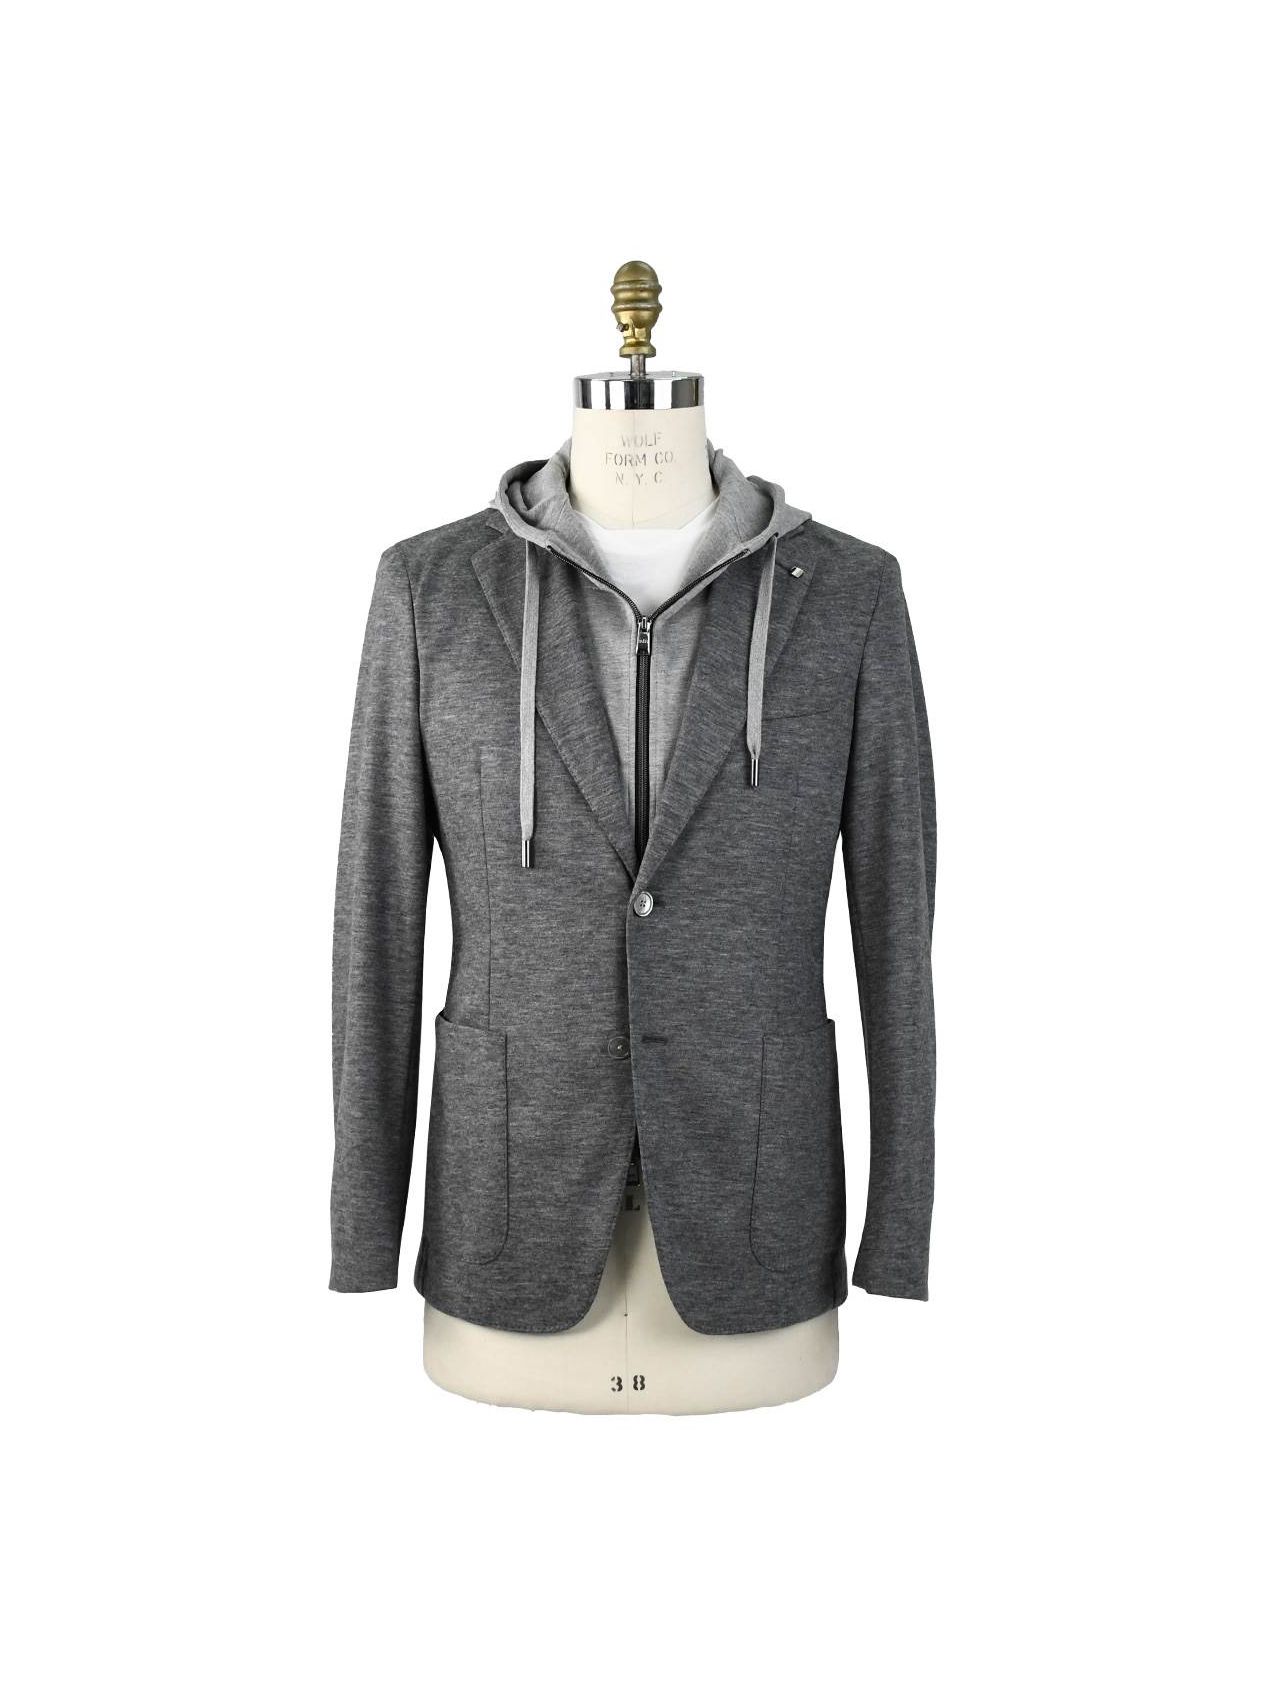 ESCADA Size 6 Grey & Silver Virgin Wool Paint Splatter Jacket